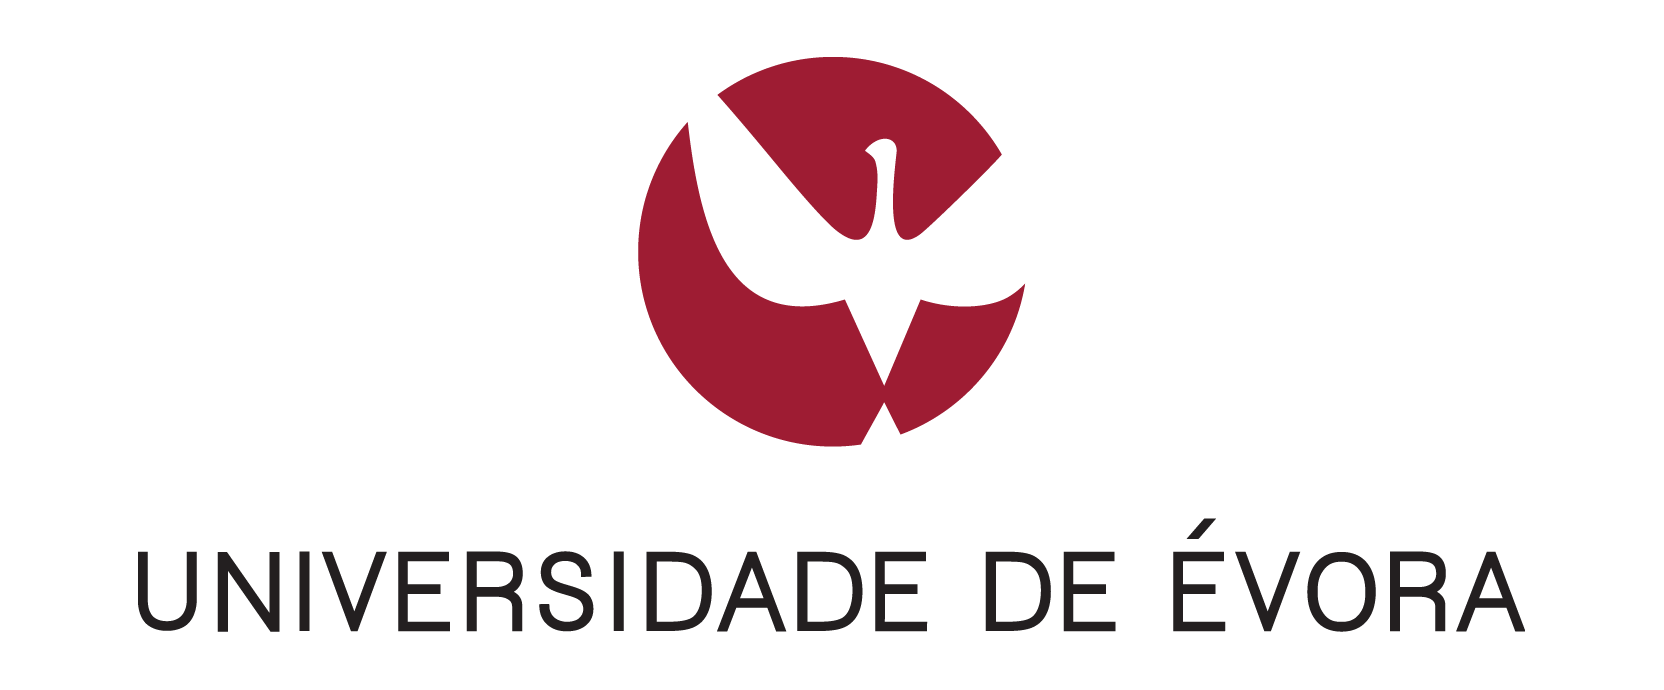 Logotipo da Universidade de Evora vertical 1